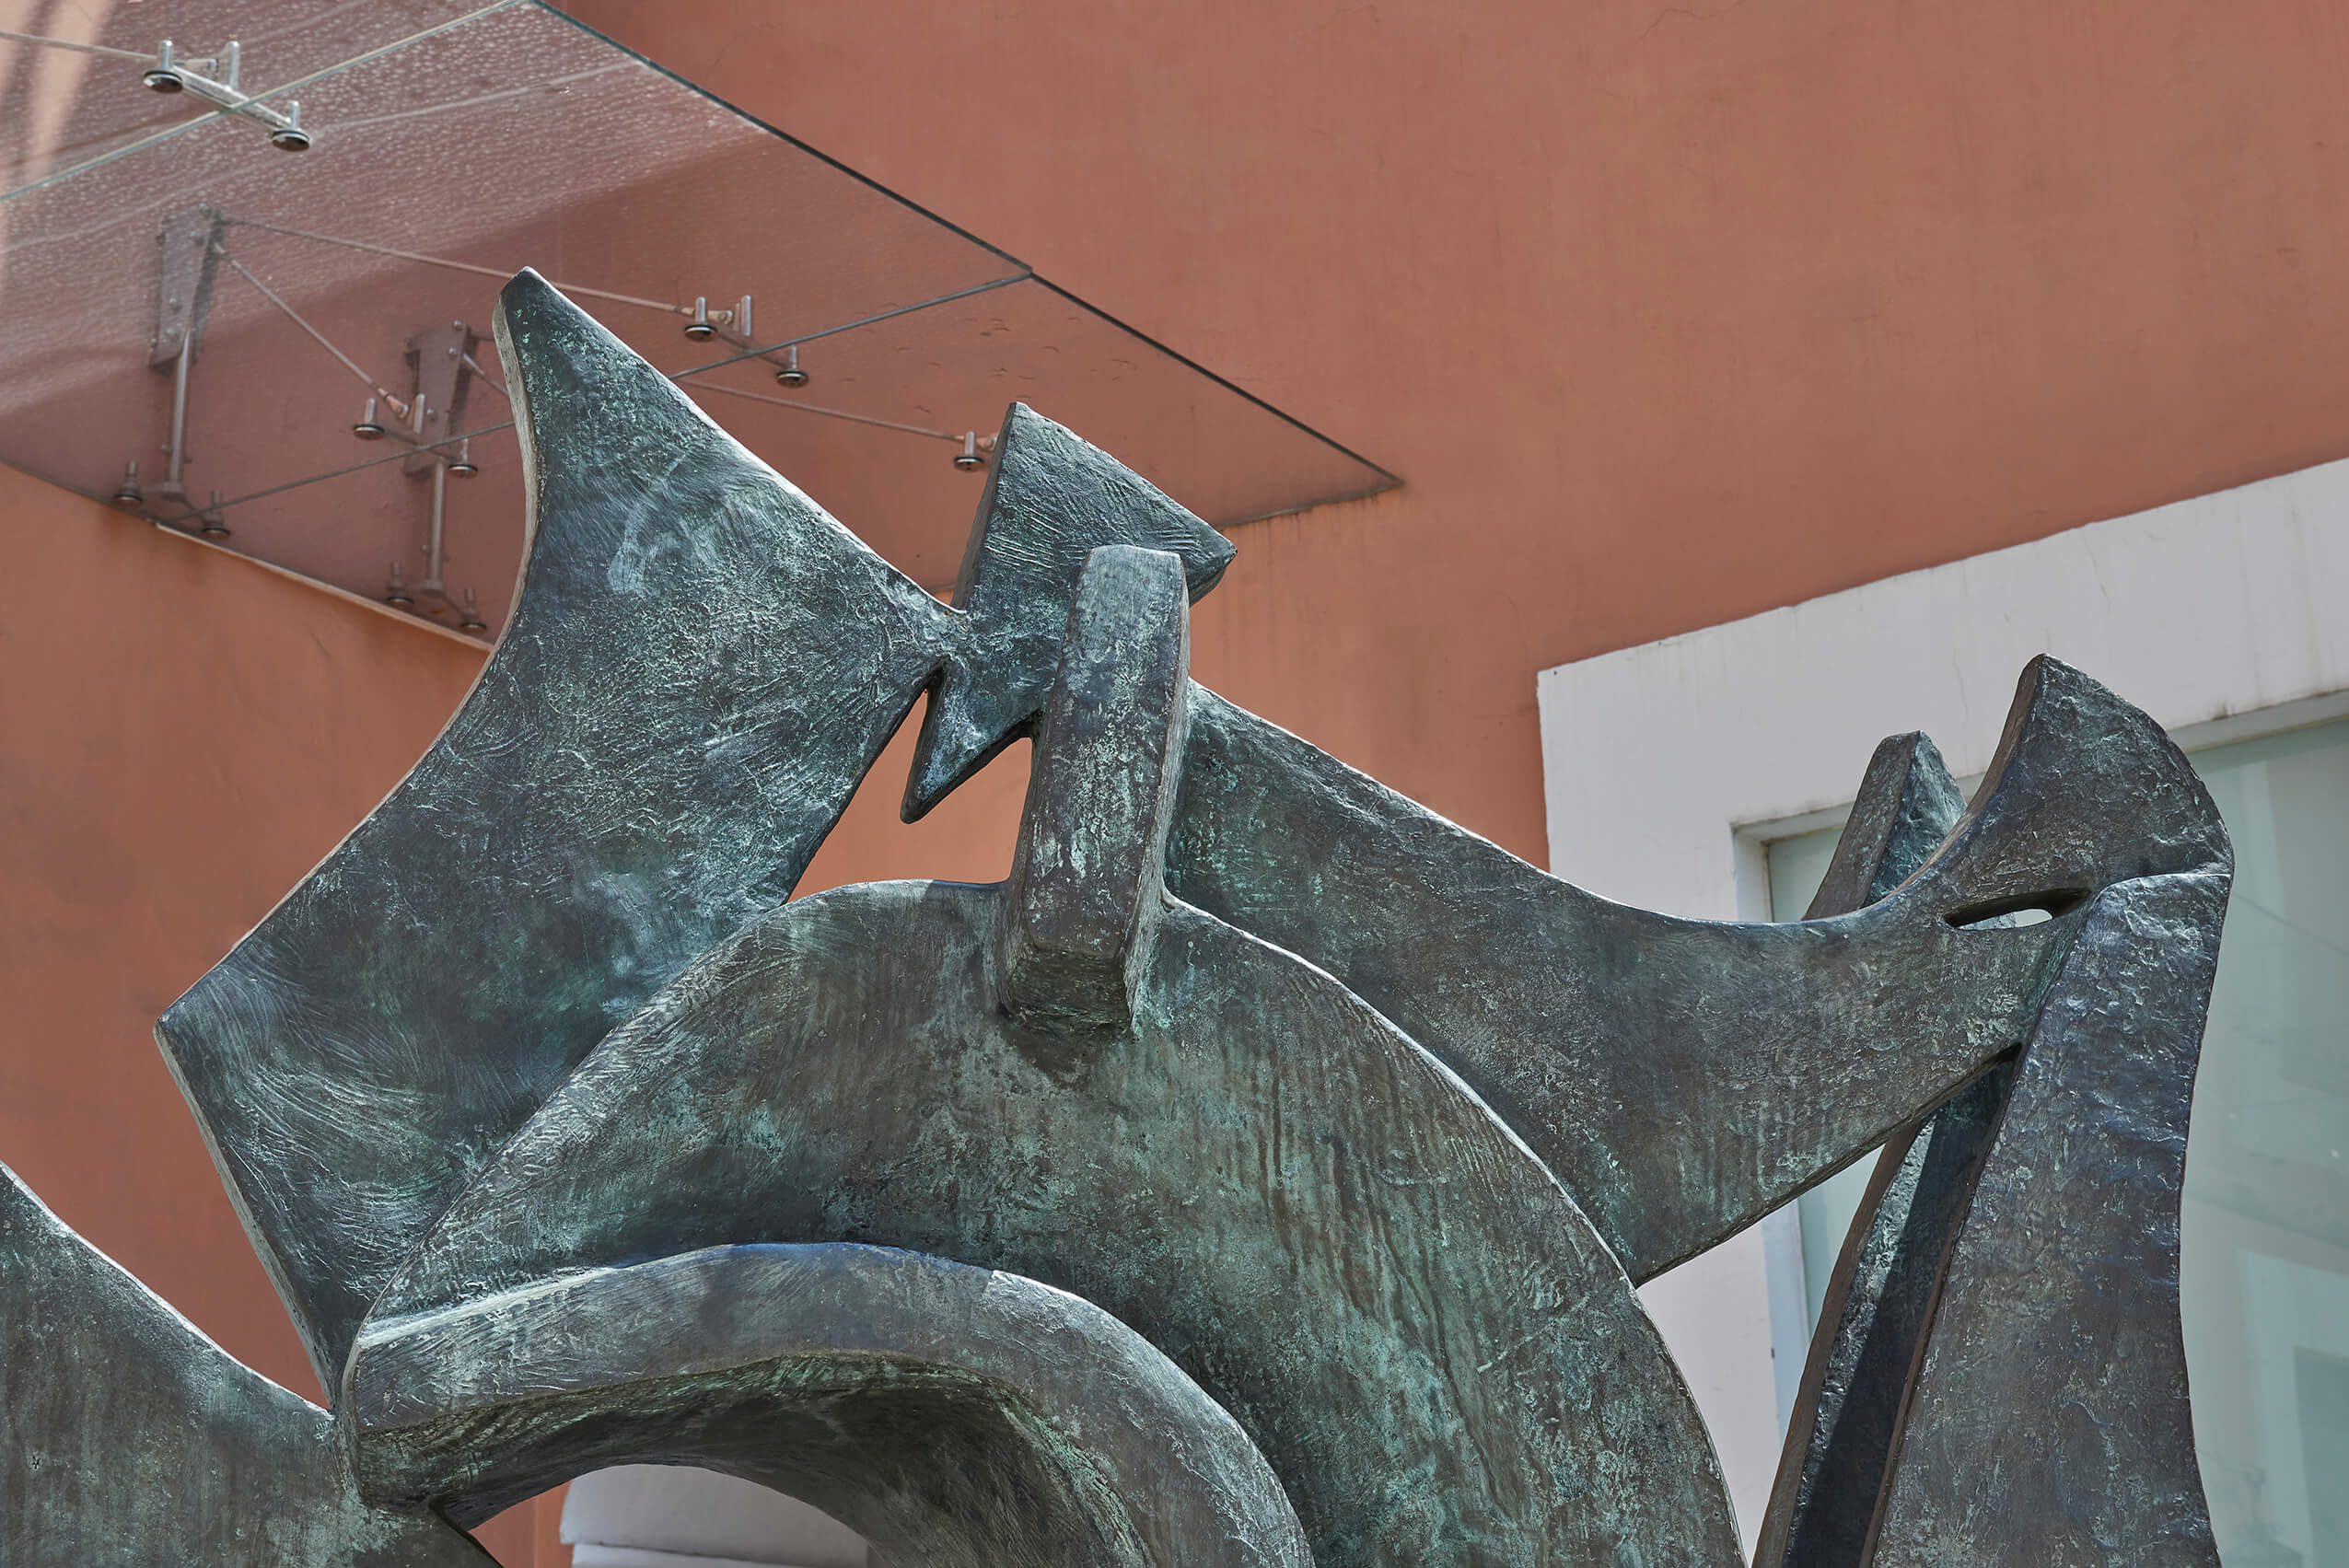 Caracol | El tiempo en las cosas. Salas de Arte Contemporáneo | Museo Amparo, Puebla